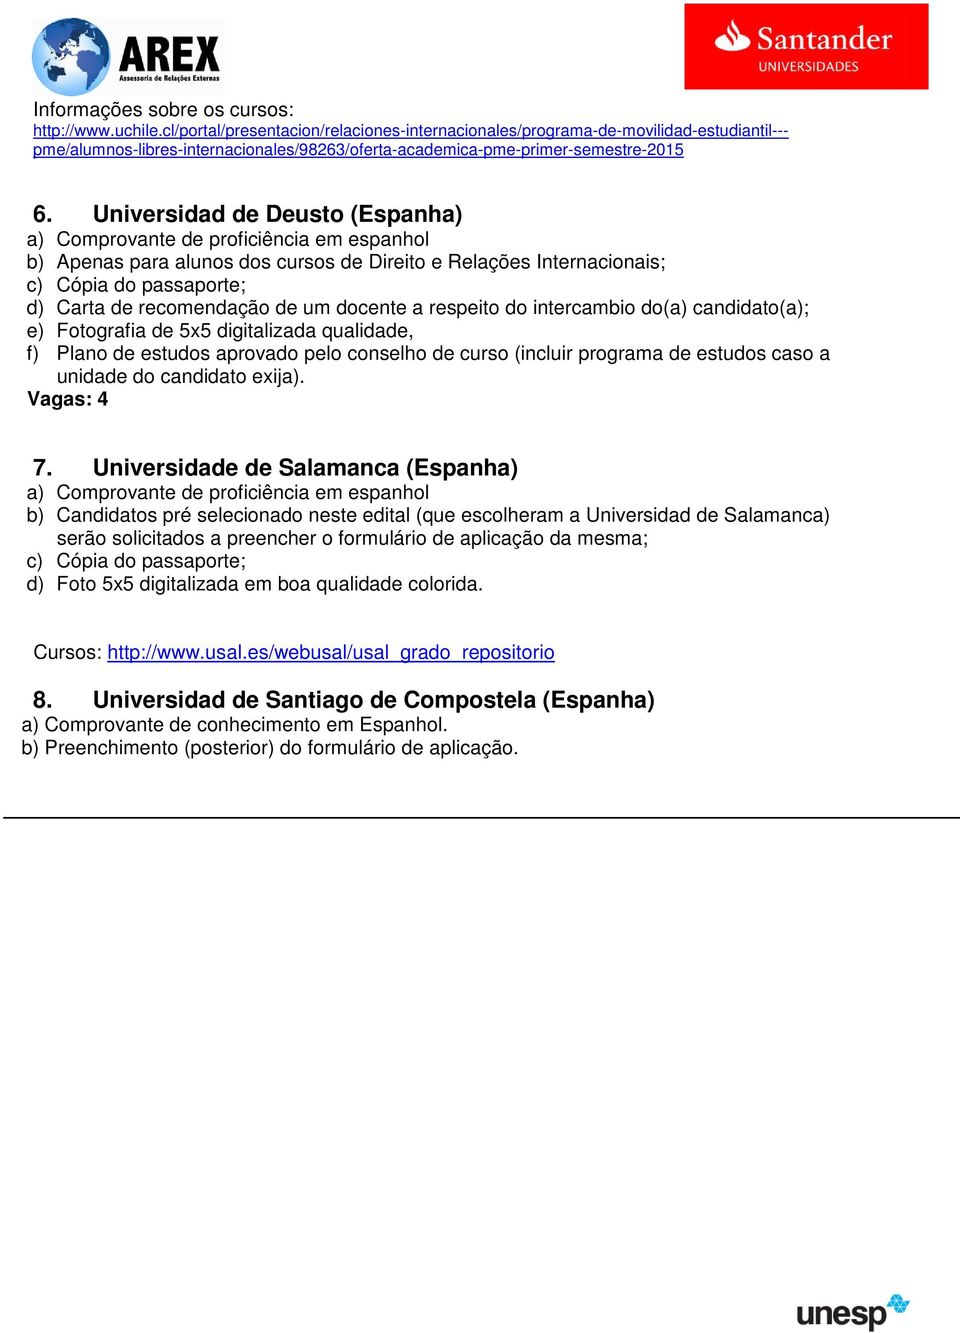 Universidad de Deusto (Espanha) a) Comprovante de proficiência em espanhol b) Apenas para alunos dos cursos de Direito e Relações Internacionais; c) Cópia do passaporte; d) Carta de recomendação de